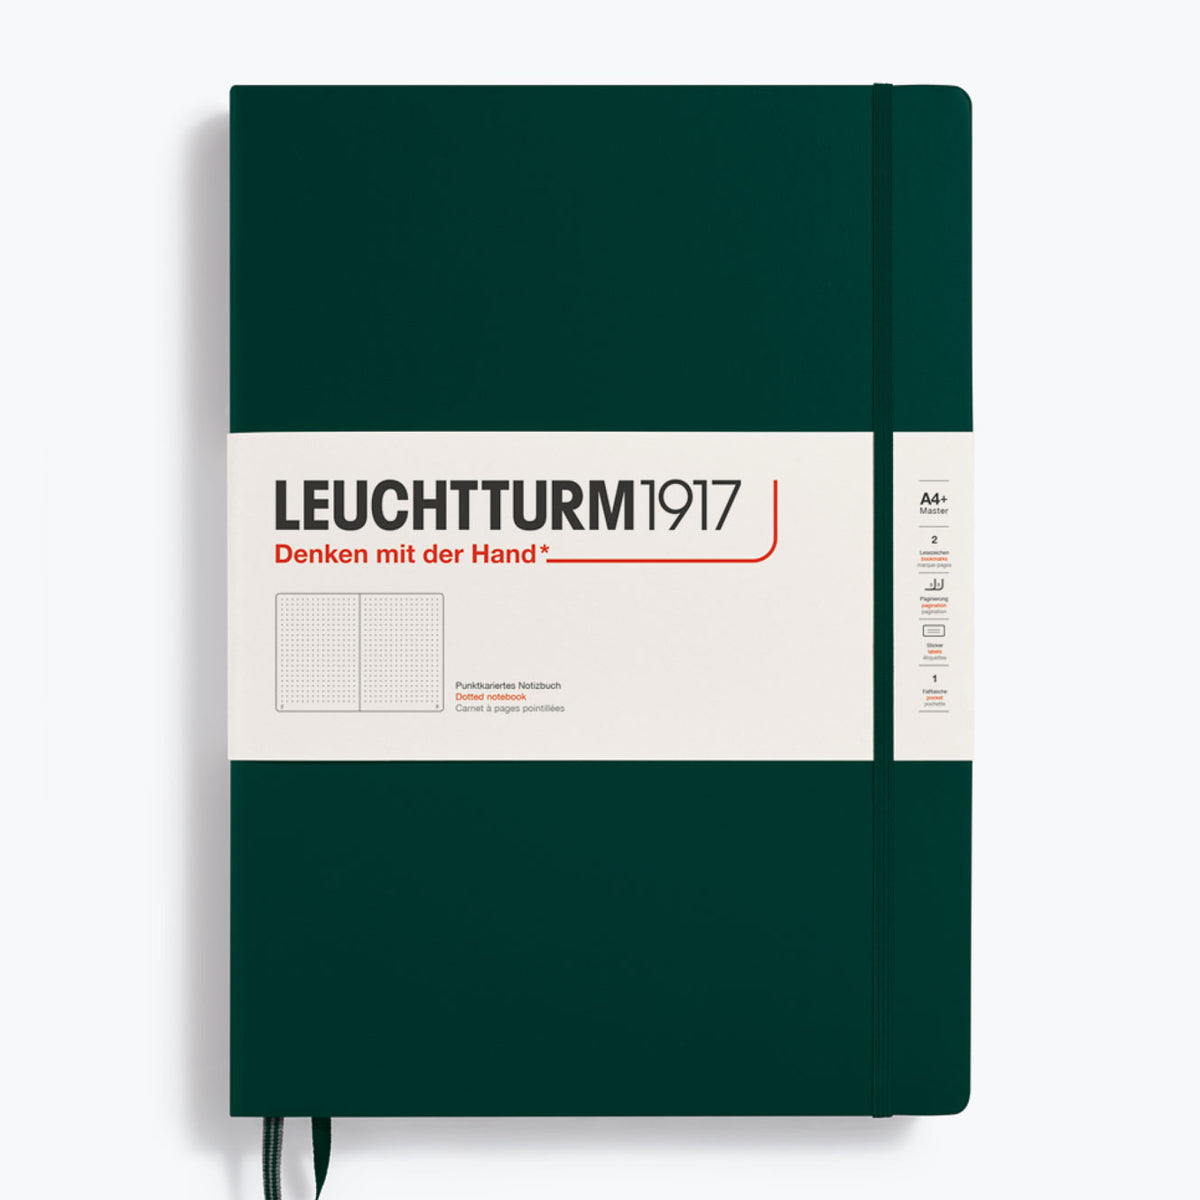 Leuchtturm1917 - Notebook - A4+ - Forest Green